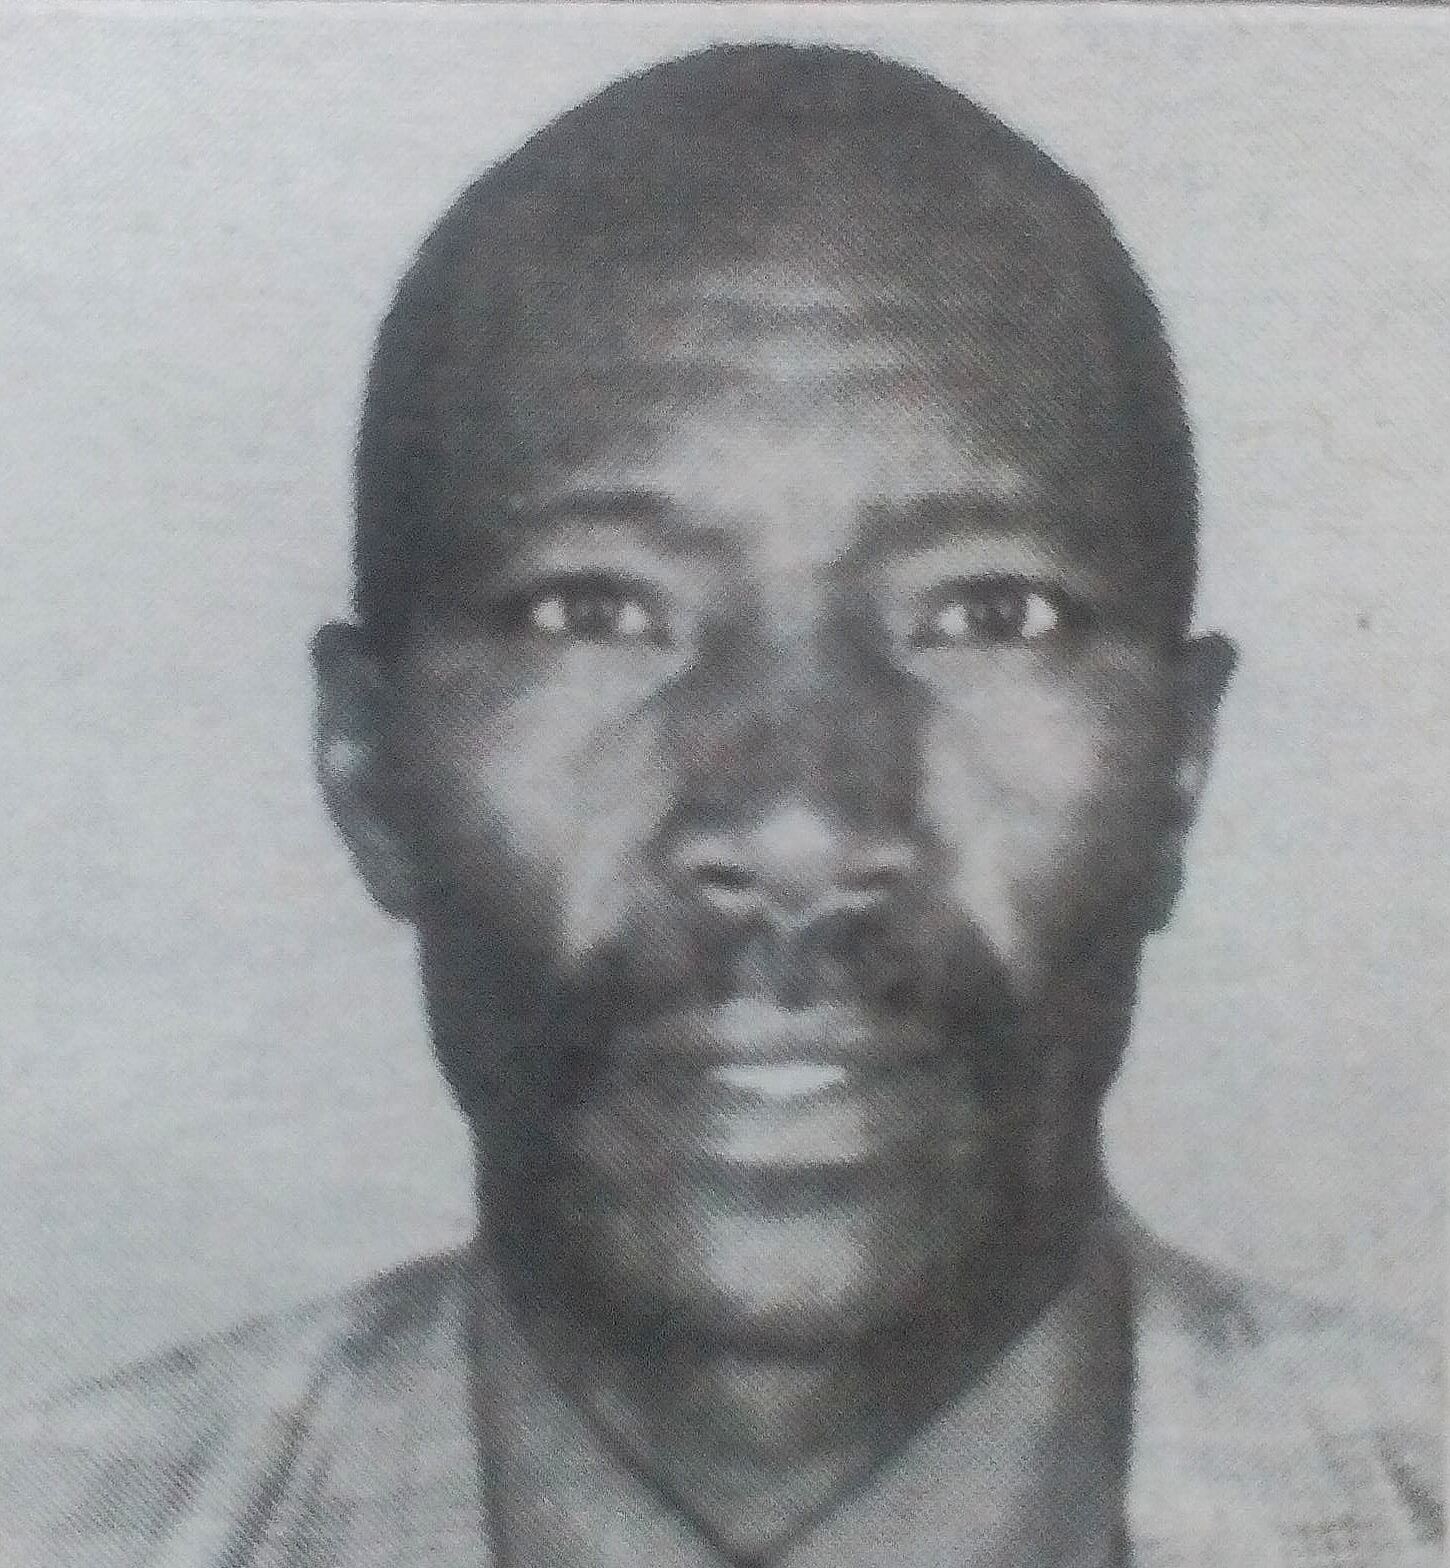 Obituary Image of jackson Musyoka Mbingu